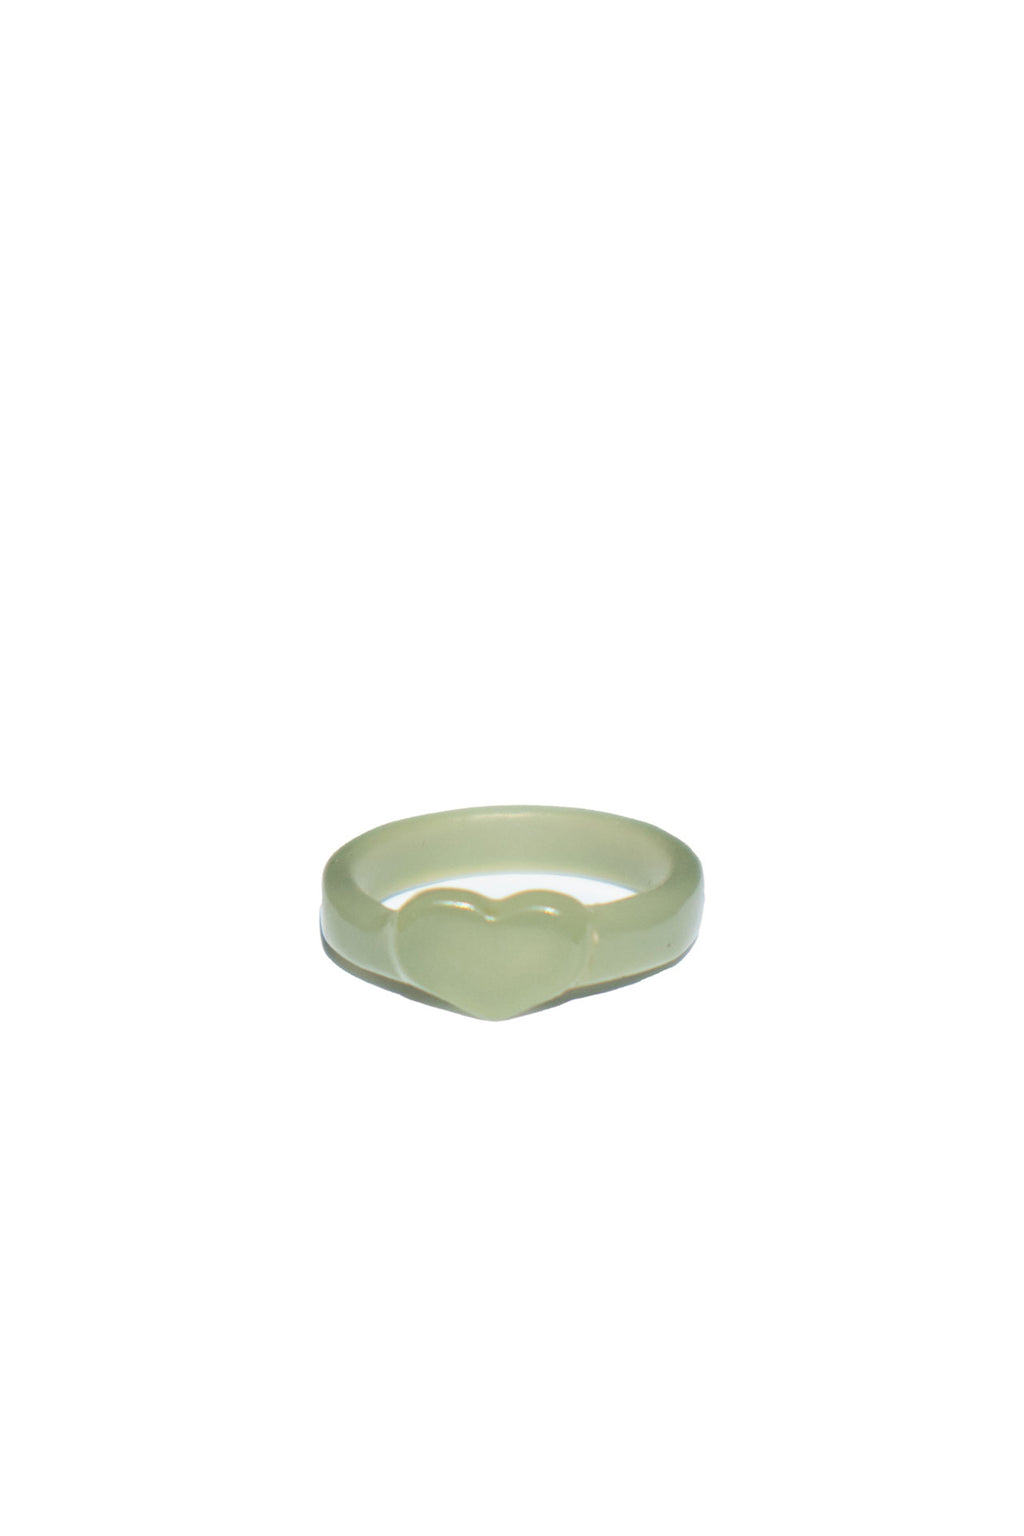 seree-jade-heart-ring-in-green-nephrite-1